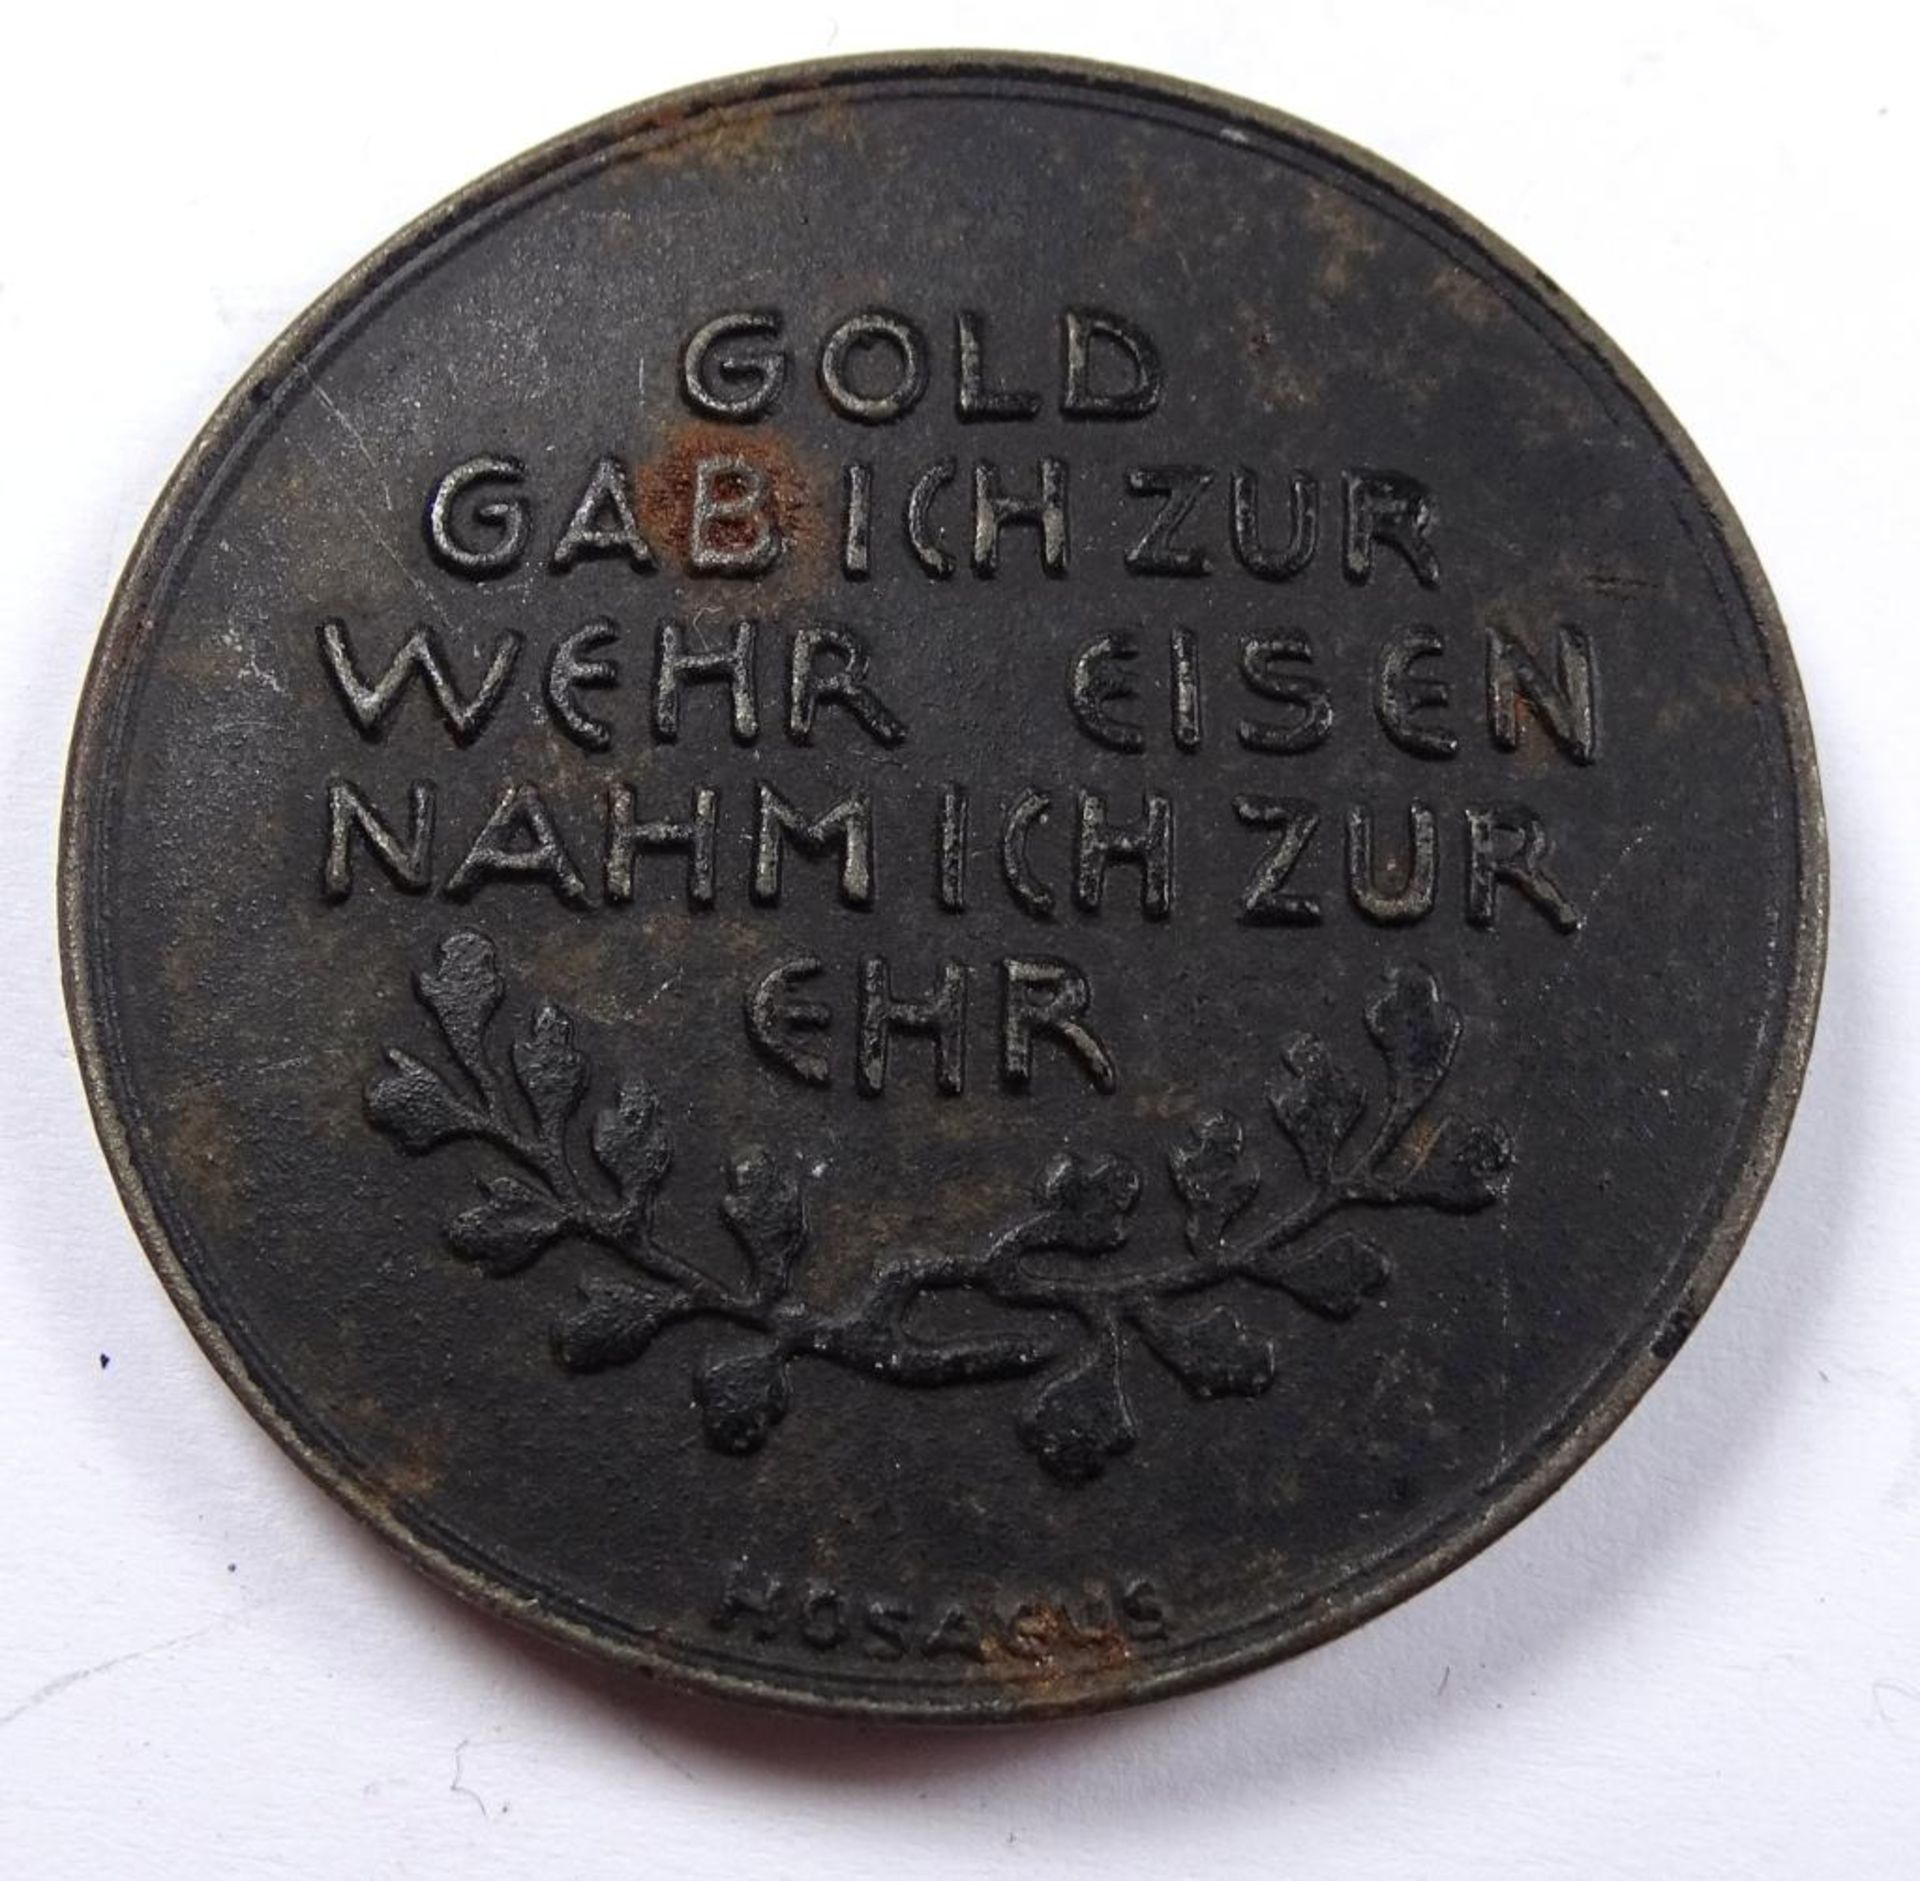 Medaille " In Eiserner Zeit 1916 ""Gold gab ich zur Wehr Eisen nahm ich zur Ehr" - Bild 2 aus 2